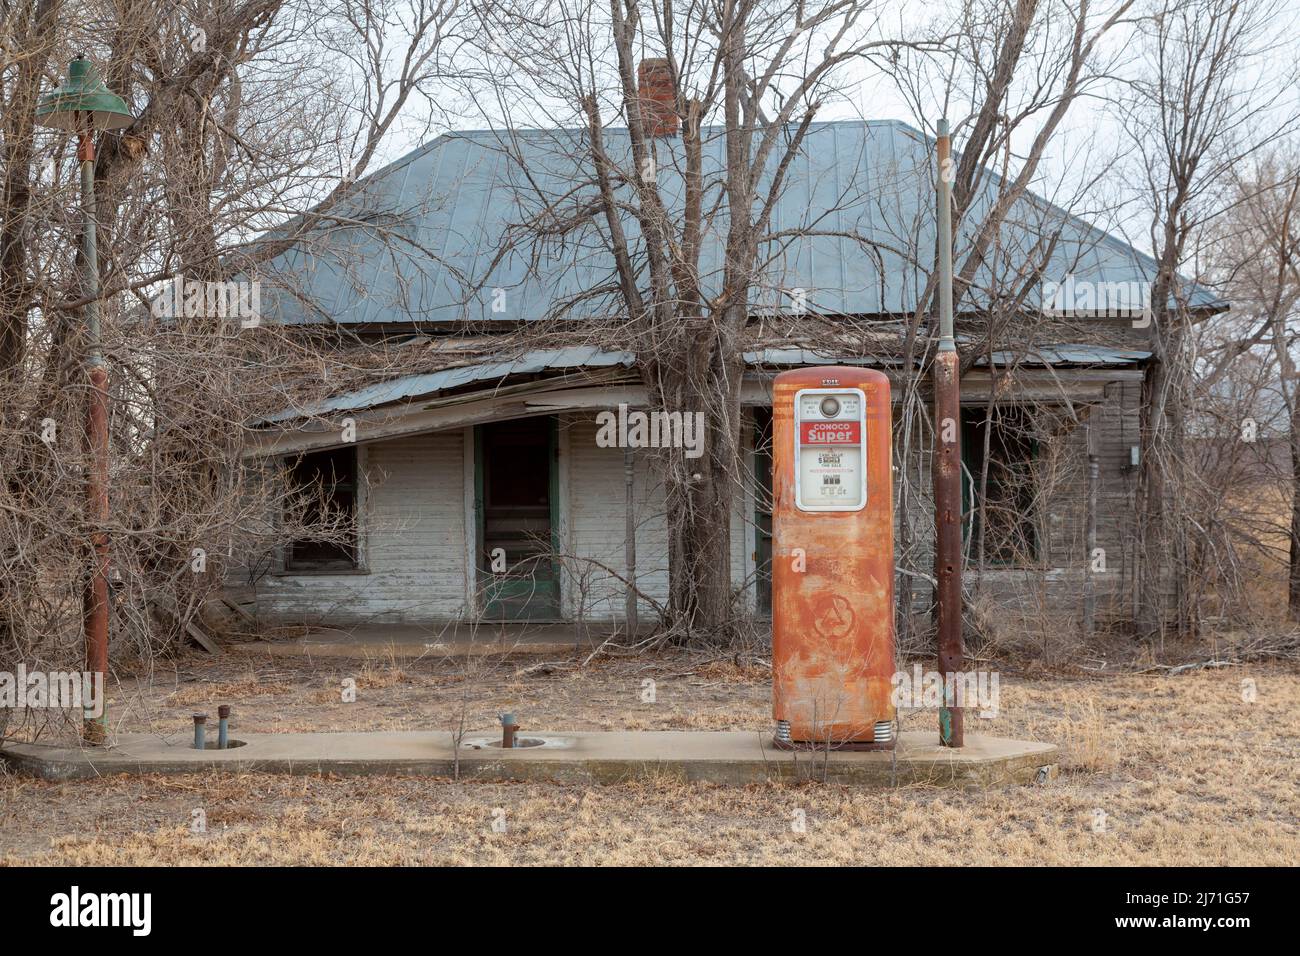 Gate, Oklahoma - une ancienne pompe à gaz à une station de remplissage Conoco abandonnée dans le manche de l'Oklahoma offre de l'essence à 35 cents le gallon. Banque D'Images